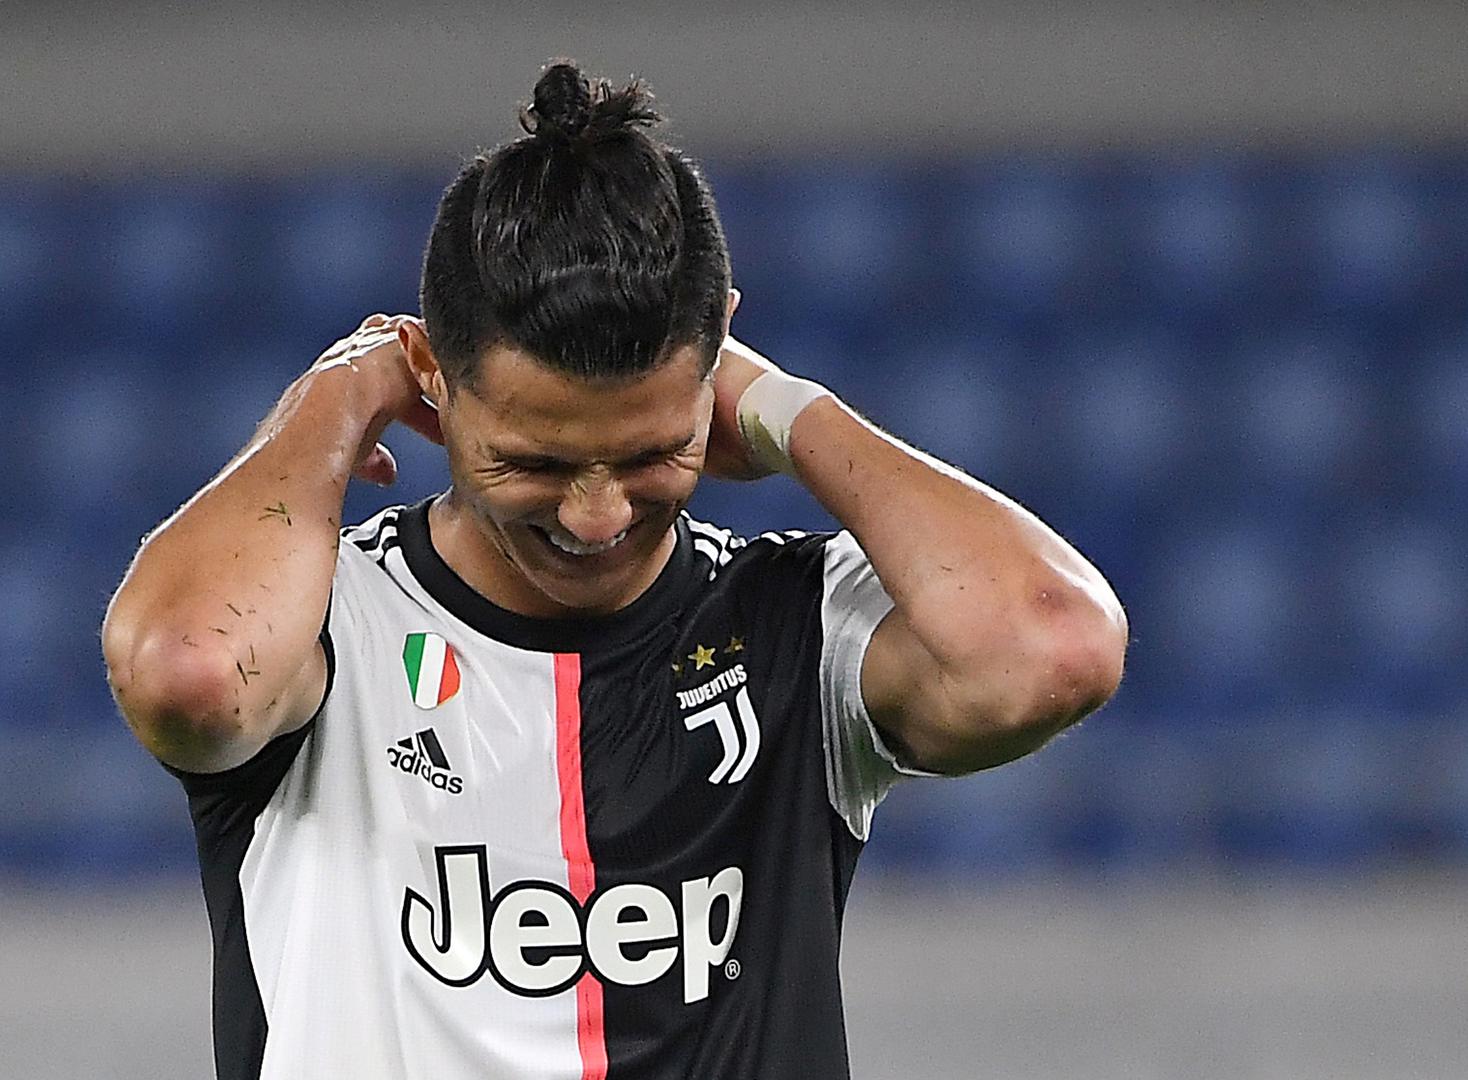 Cristiano Ronaldo bio je tužan nakon poraza, pa se moglo primijetiti da je samo otišao s terene i nije čestitati suparnicima na pobjedi